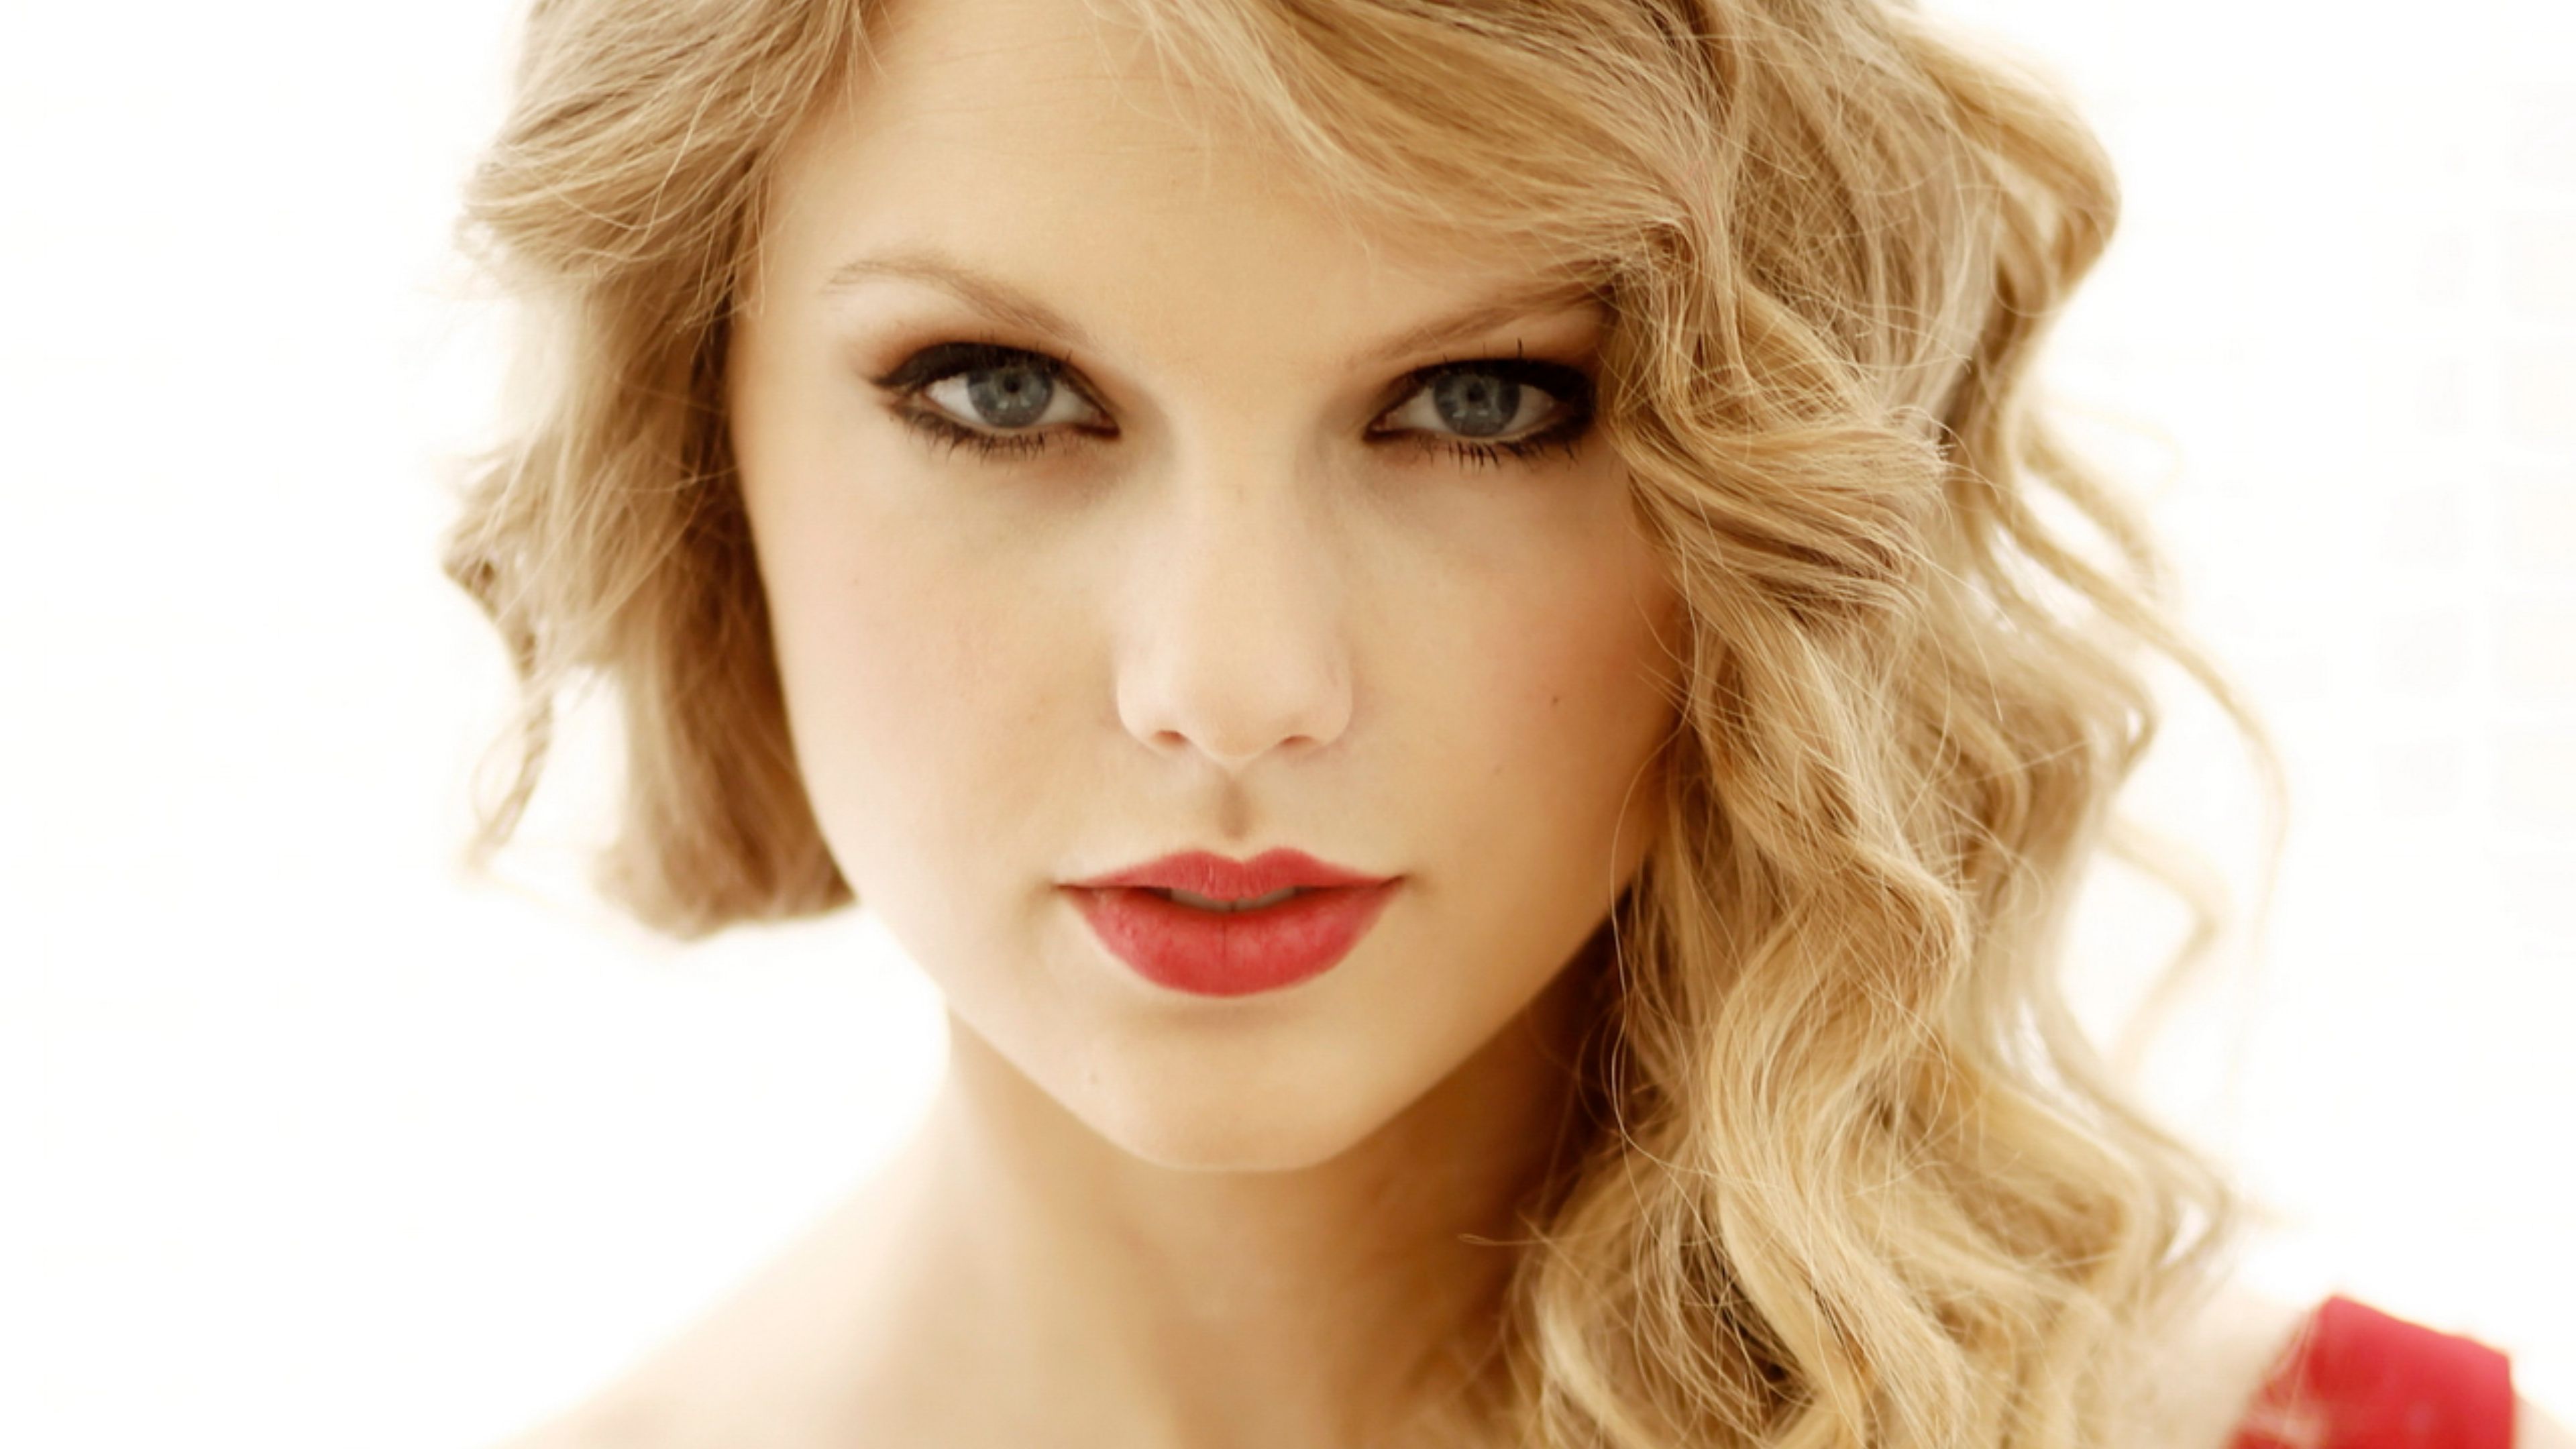 Cute Taylor Swift 4k Wallpaper